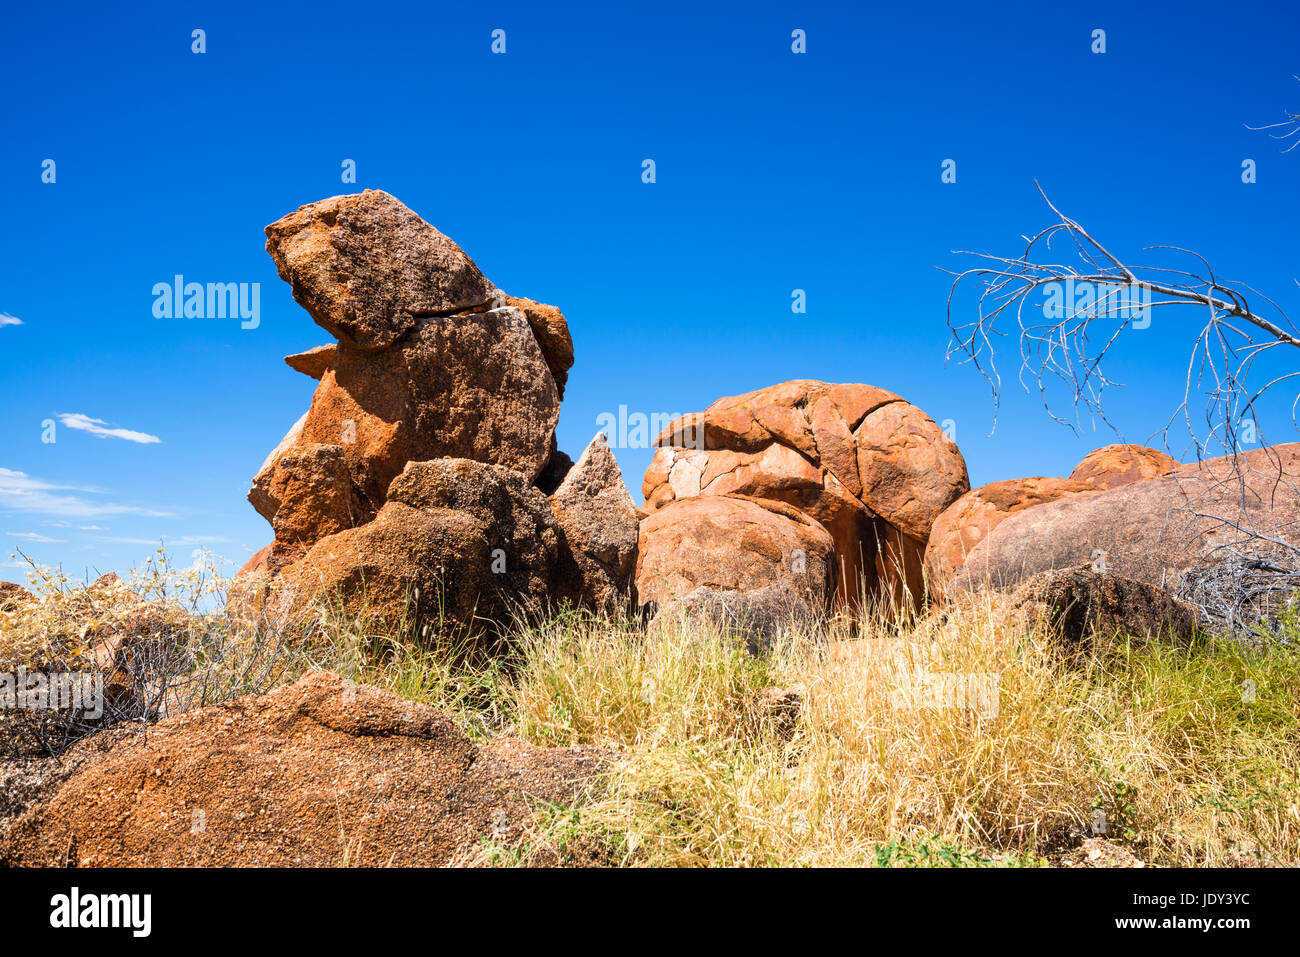 Devils Marbles - rocas de granito rojo están equilibrados en la roca, Australia, Northern Territory Foto de stock